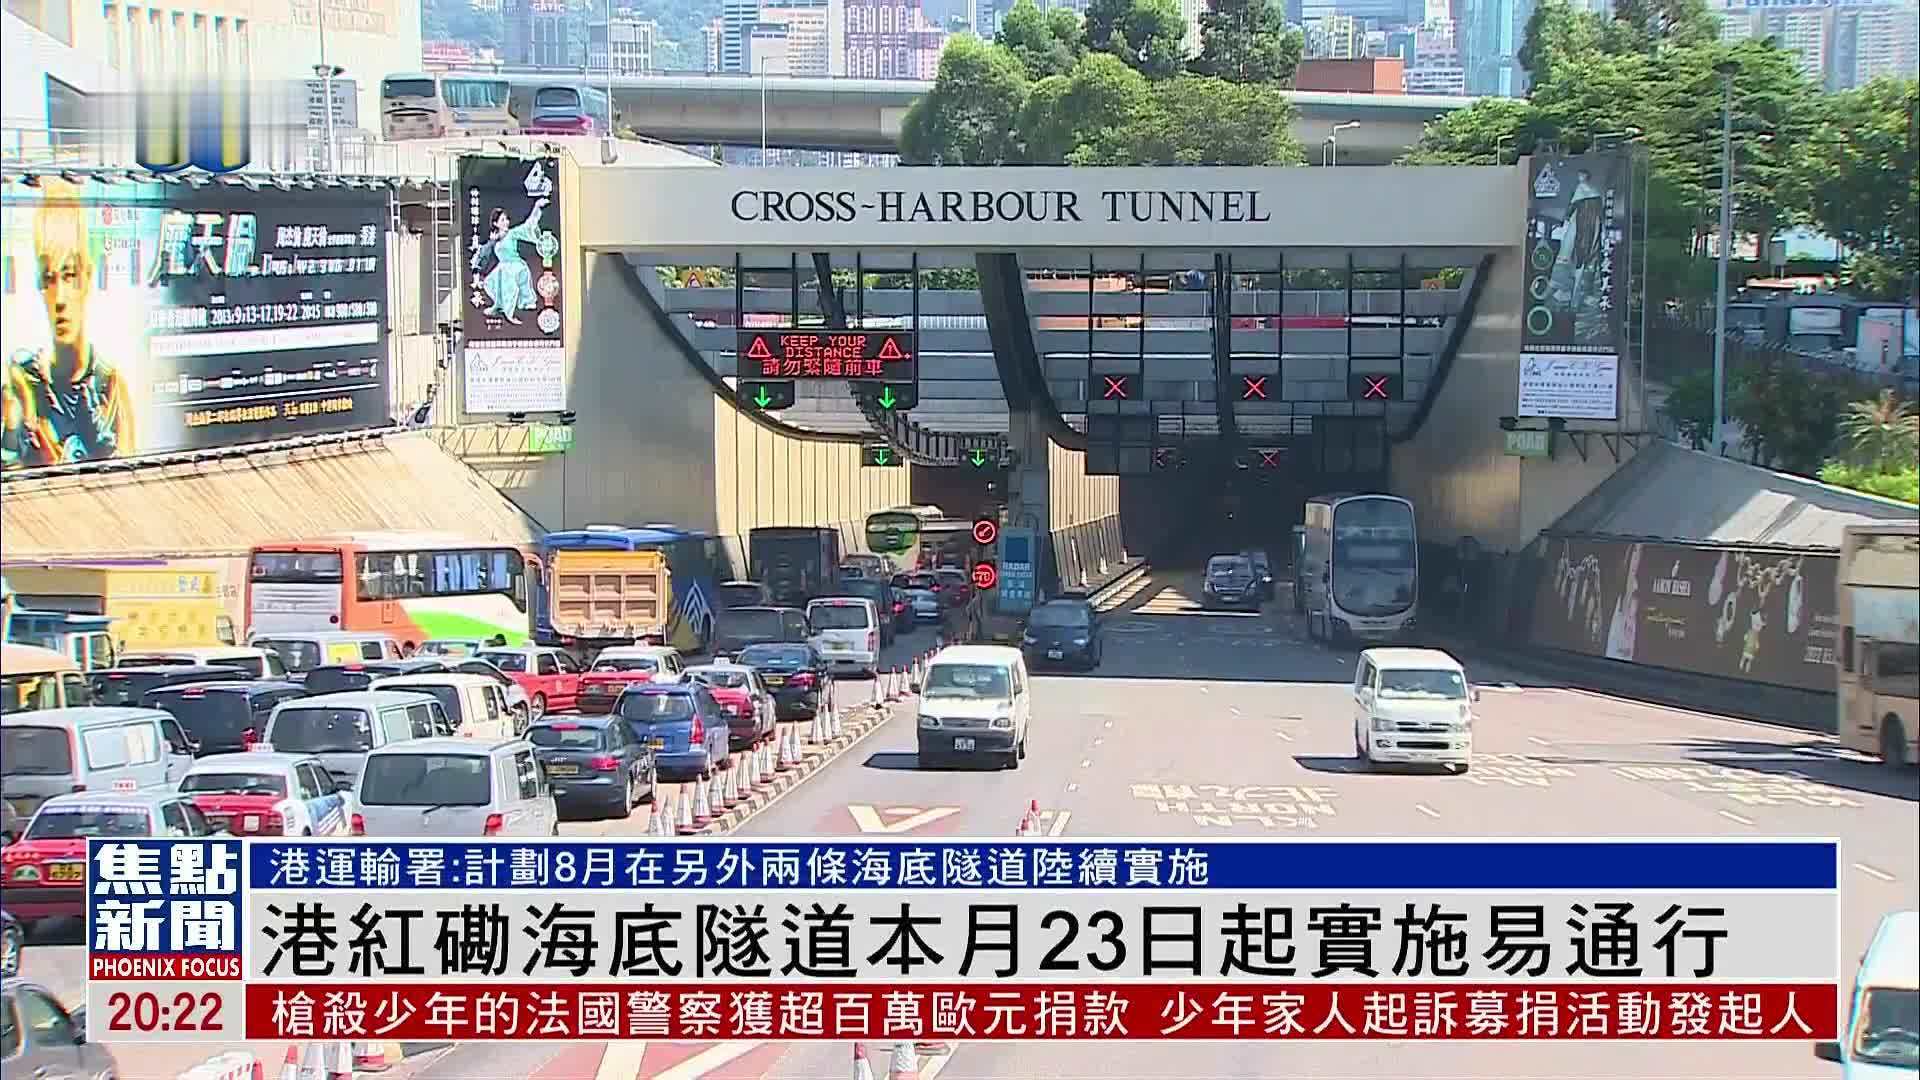 東區海底隧道 | 香港巴士大典 | FANDOM powered by Wikia